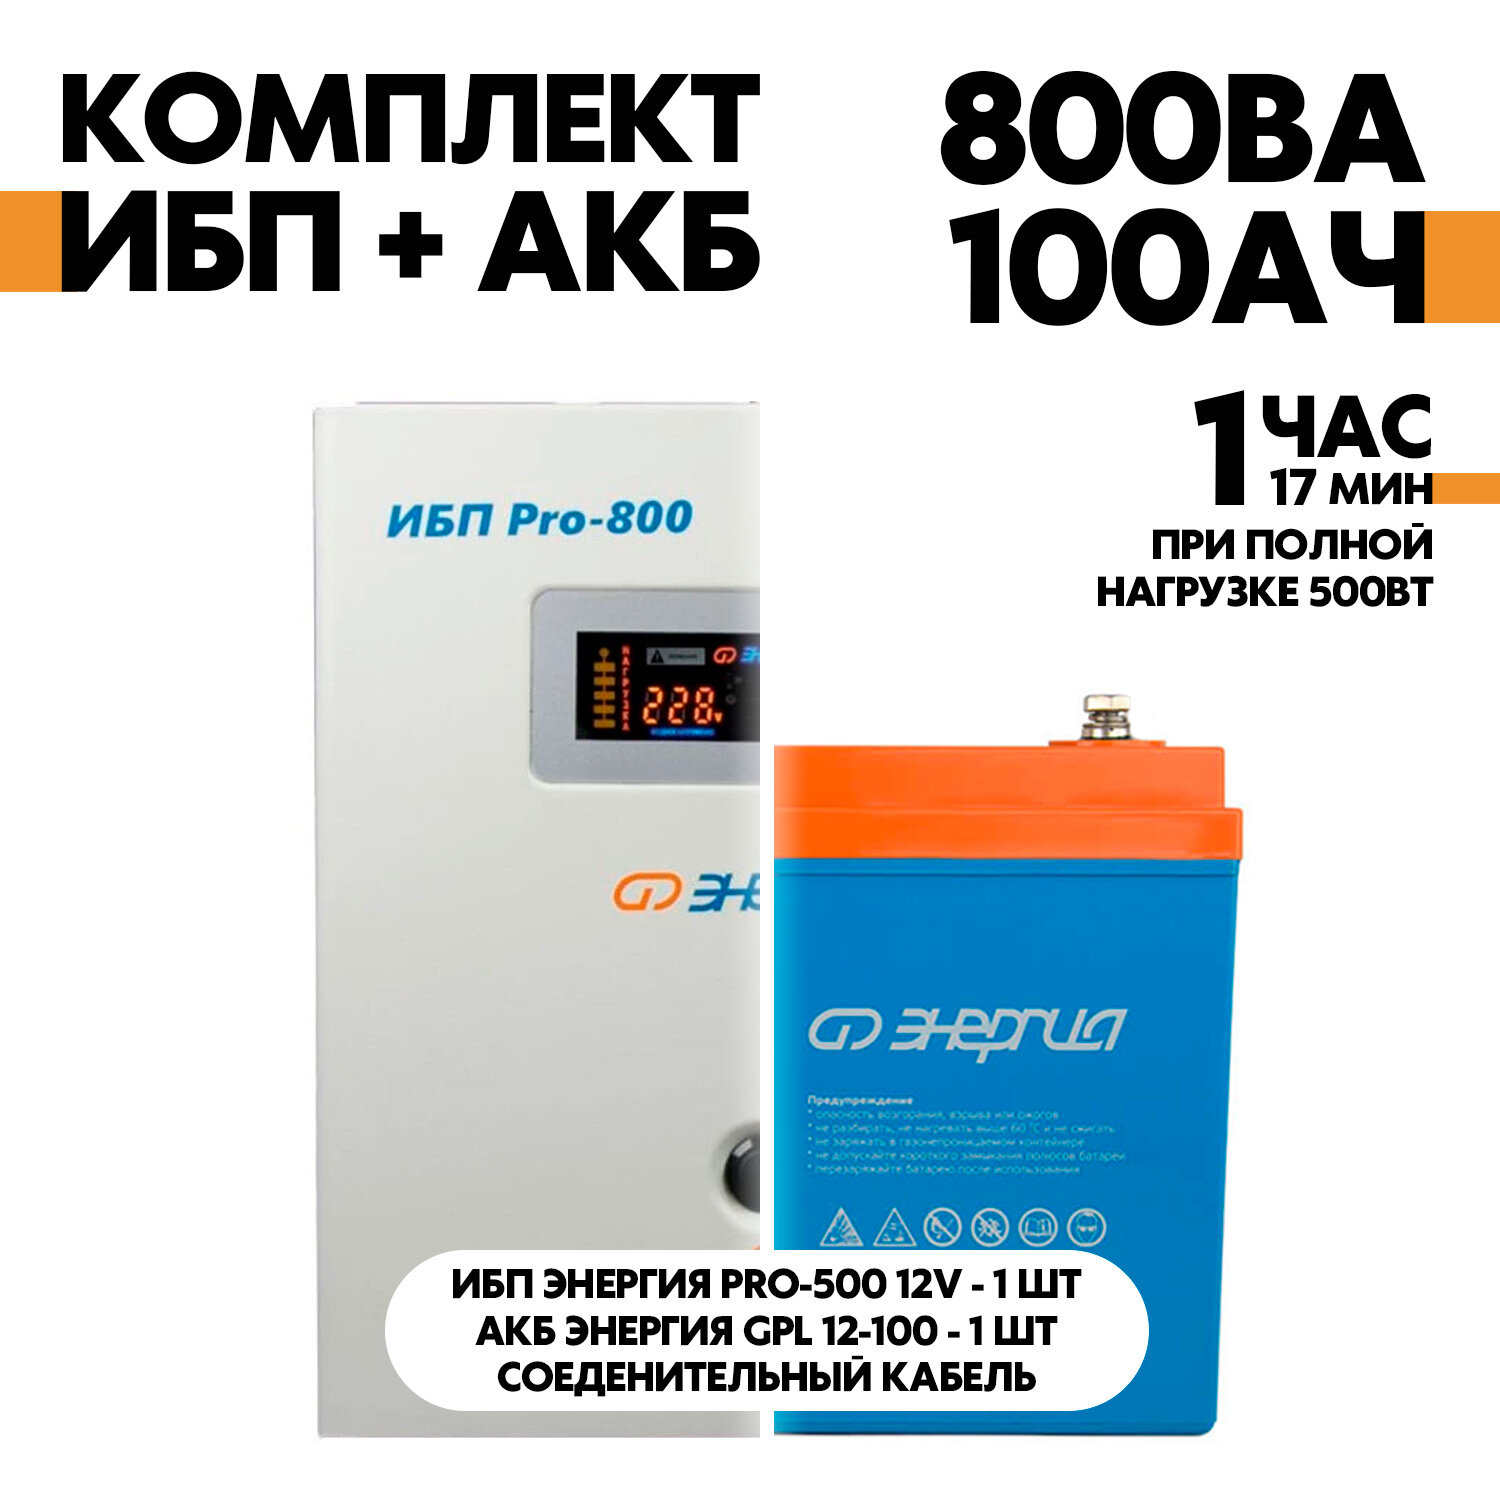 Интерактивный ИБП Энергия Pro-800 12V в комплект с АКБ Энергия GPL 12-100